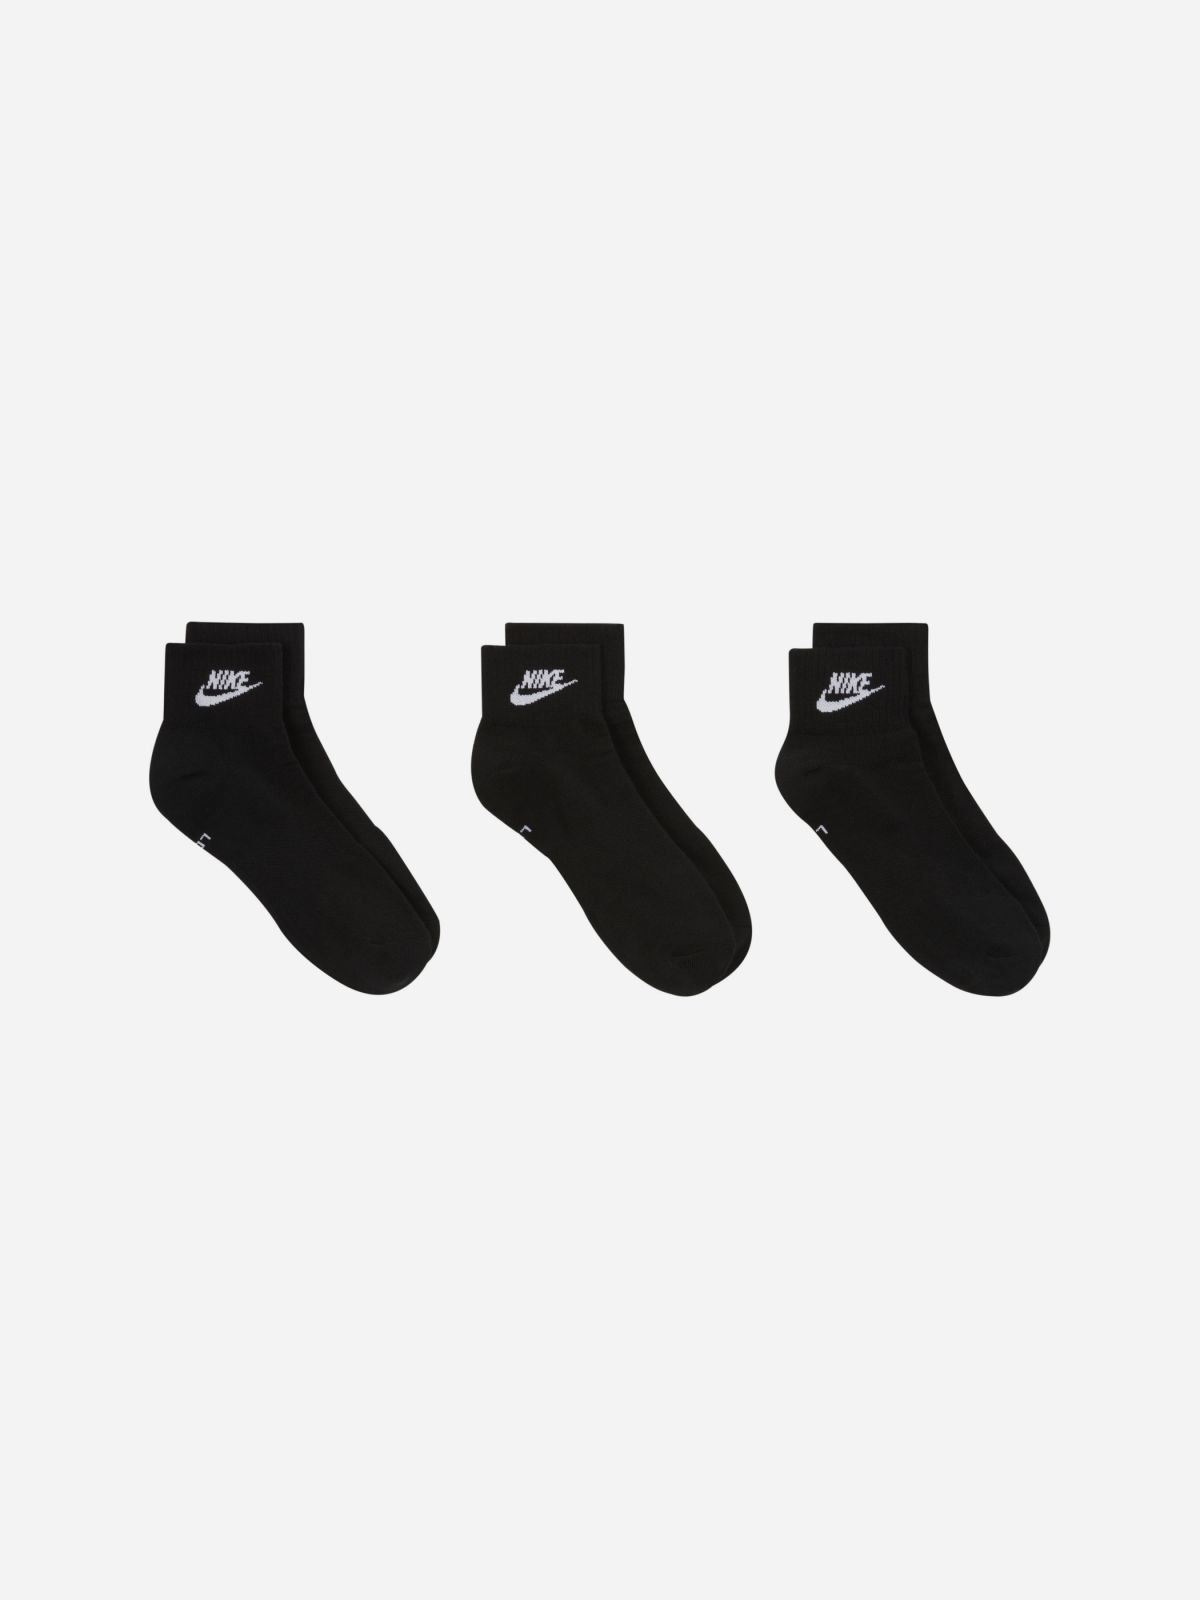  גרביים עם לוגו / גברים של NIKE